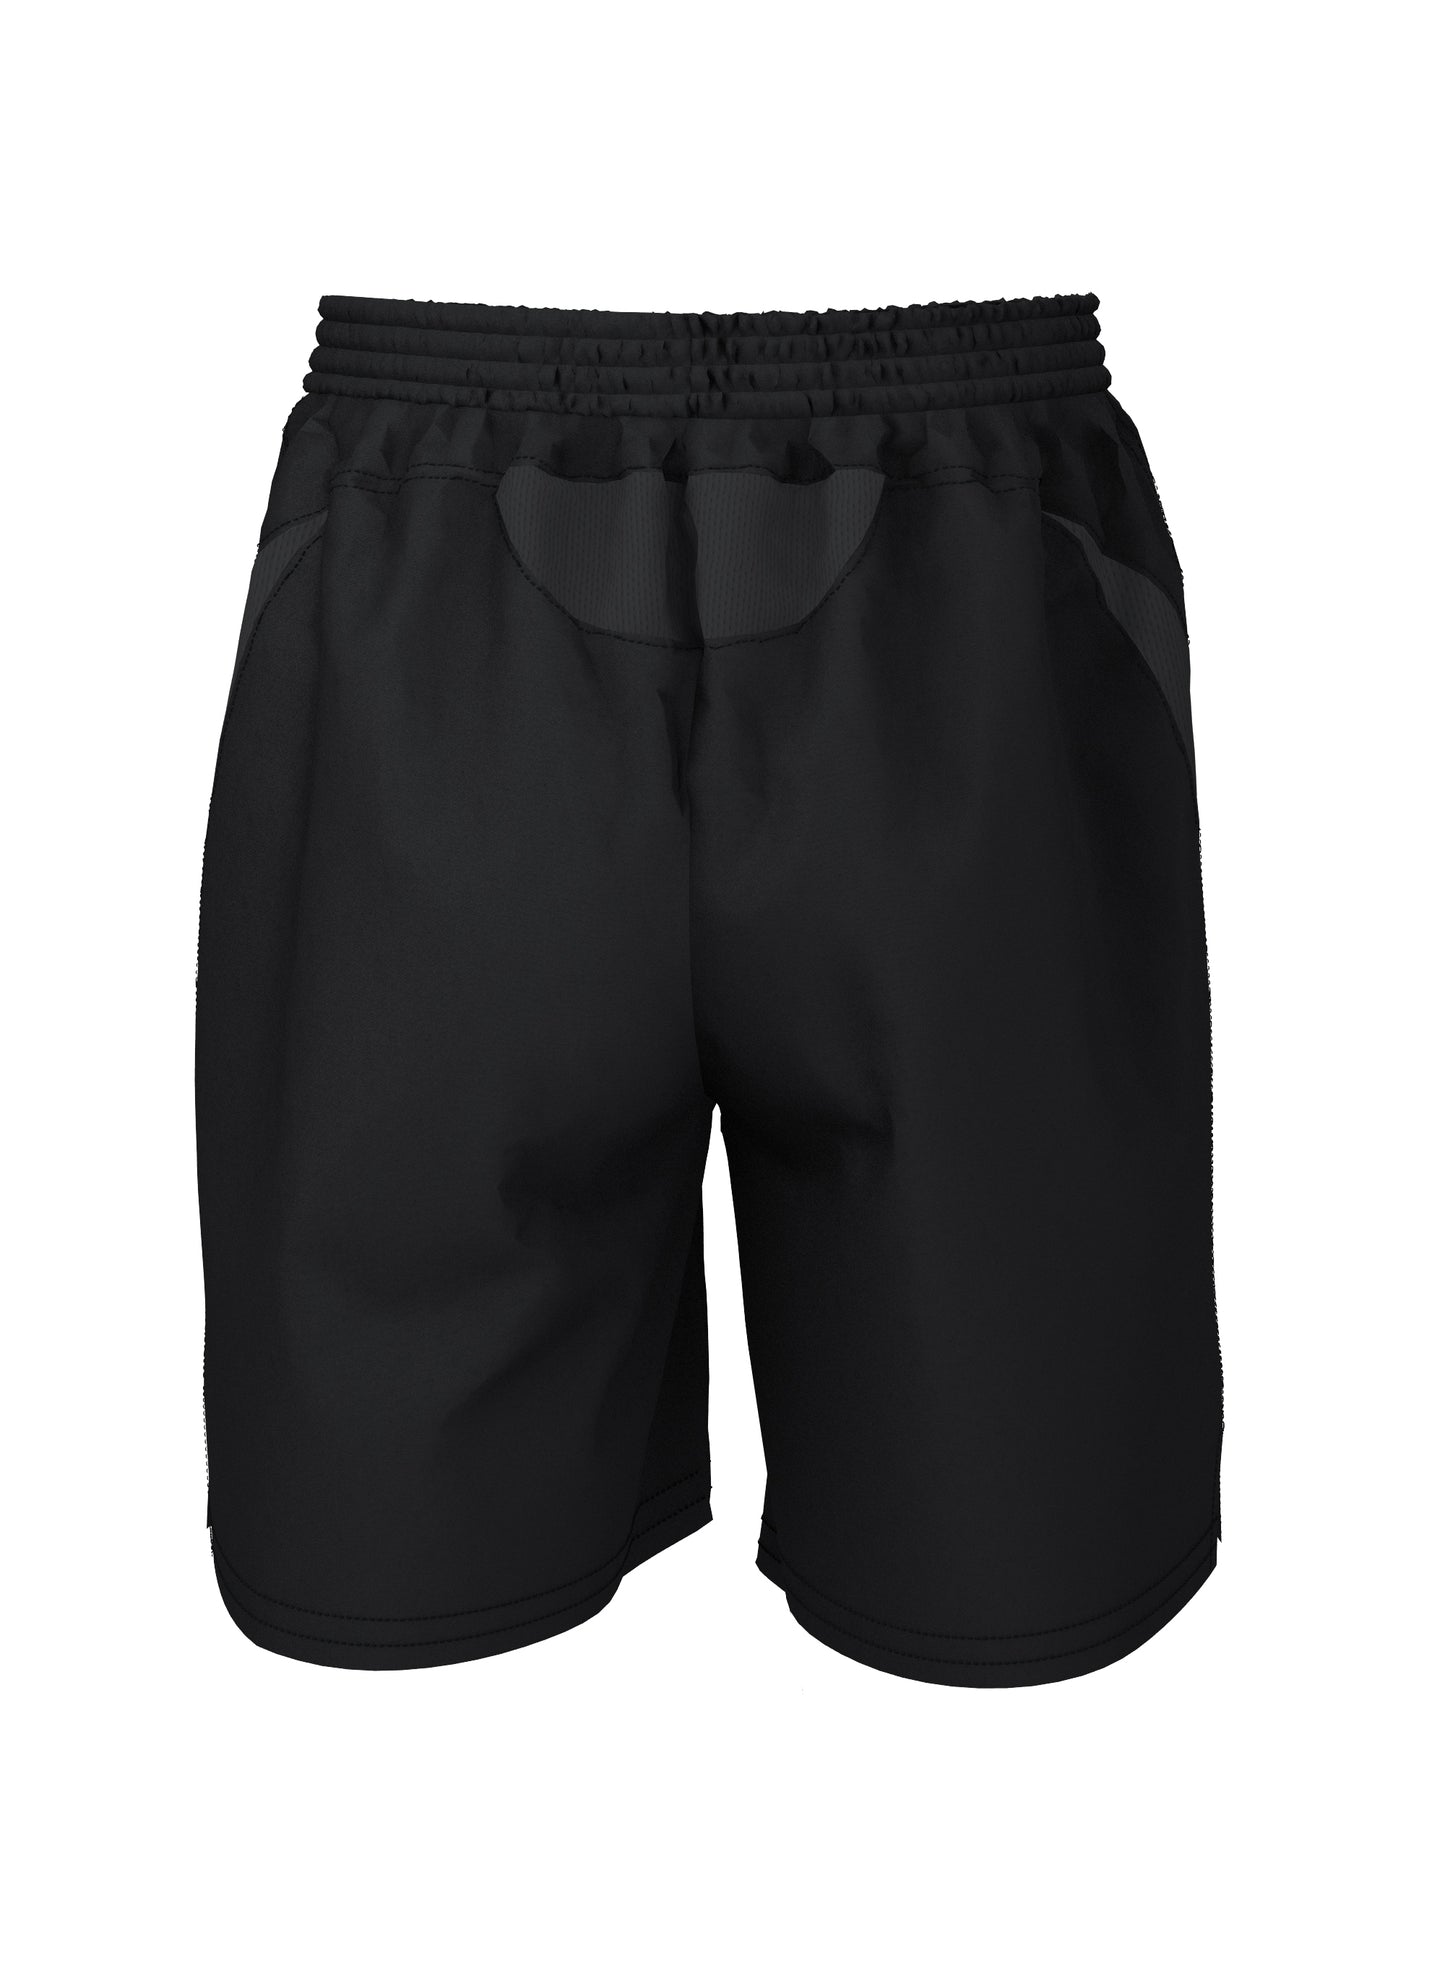 Elite Training Shorts - Black